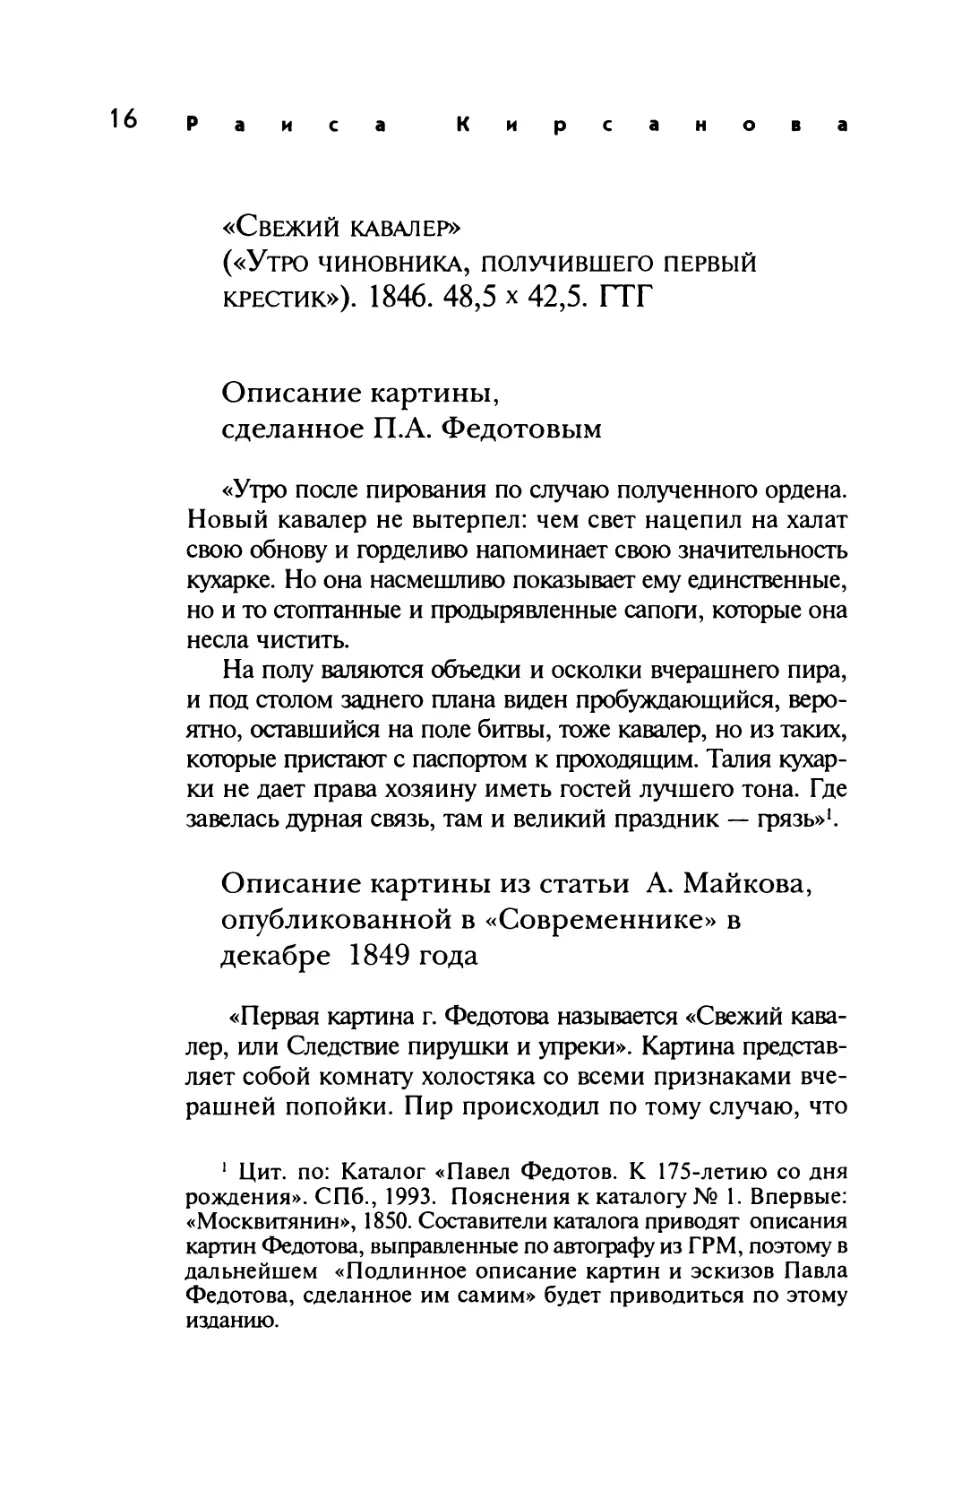 Описание картины, сделанное П.А. Федотовым
Описание картины из статьи А. Майкова, опубликованной в «Современнике» в декабре 1849 года